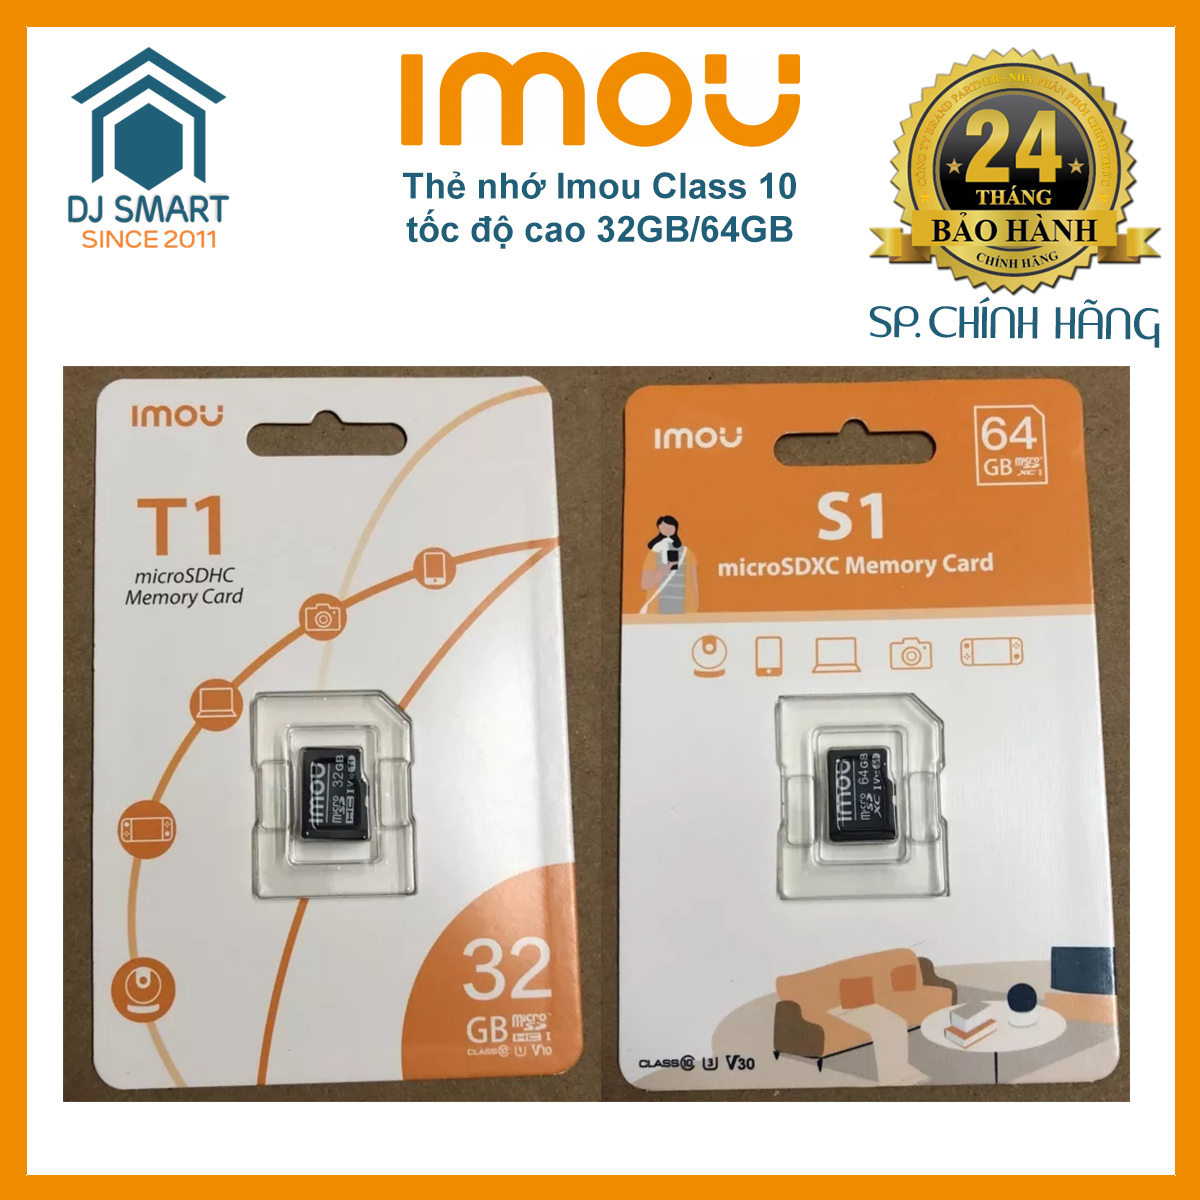 Thẻ nhớ Imou Class 10 tốc độ cao 32GB/64GB chuyên dùng cho Camera và Điện thoại. Cam kết chính hãng Imou BH 2 năm. DJ Smart